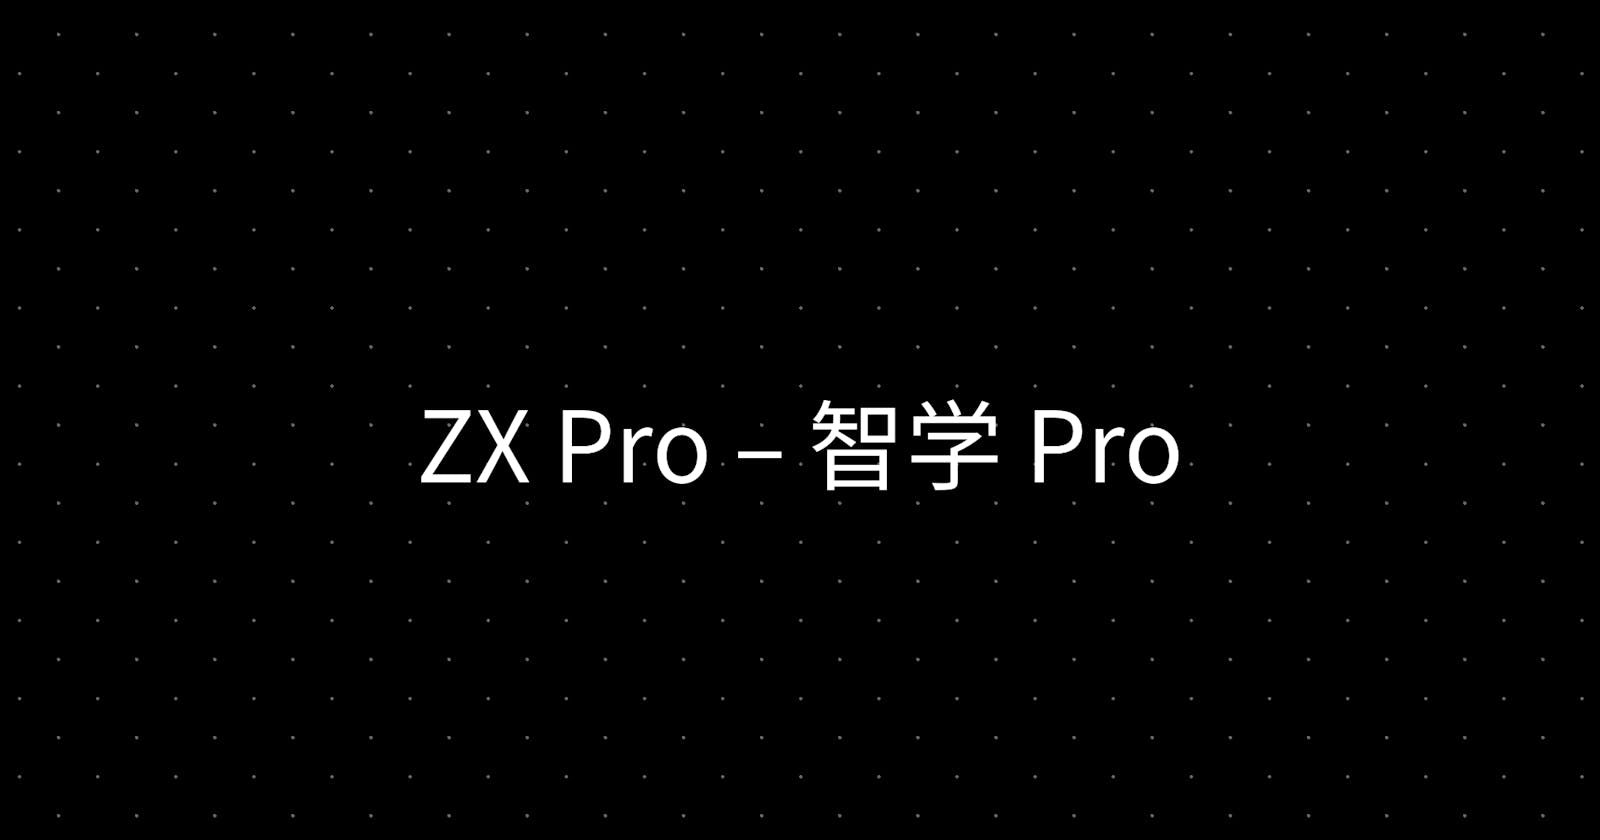 ZX Pro – 智学 Pro